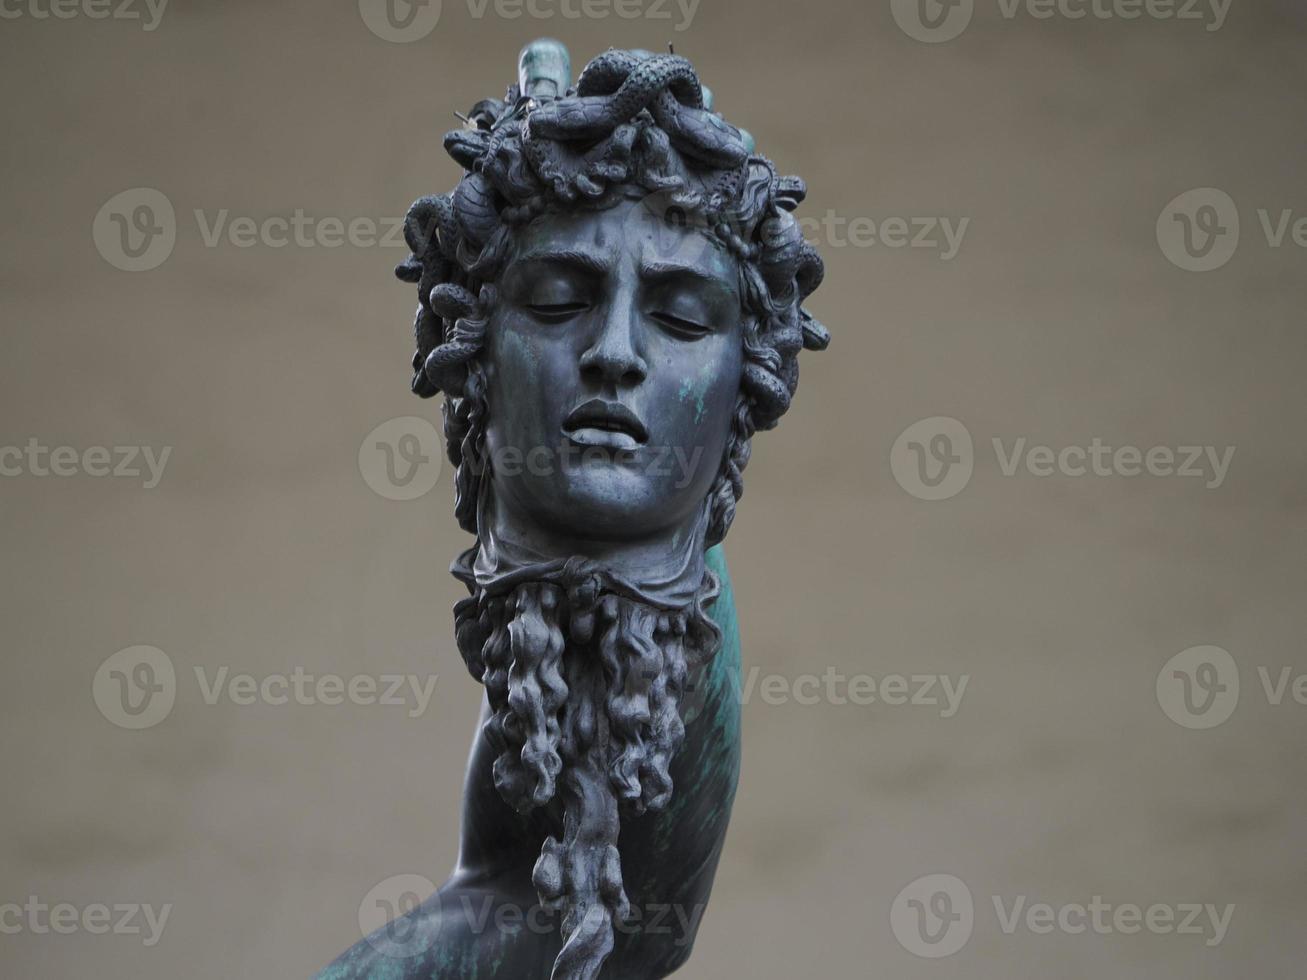 Perseo cellini bronzo statua dettaglio foto